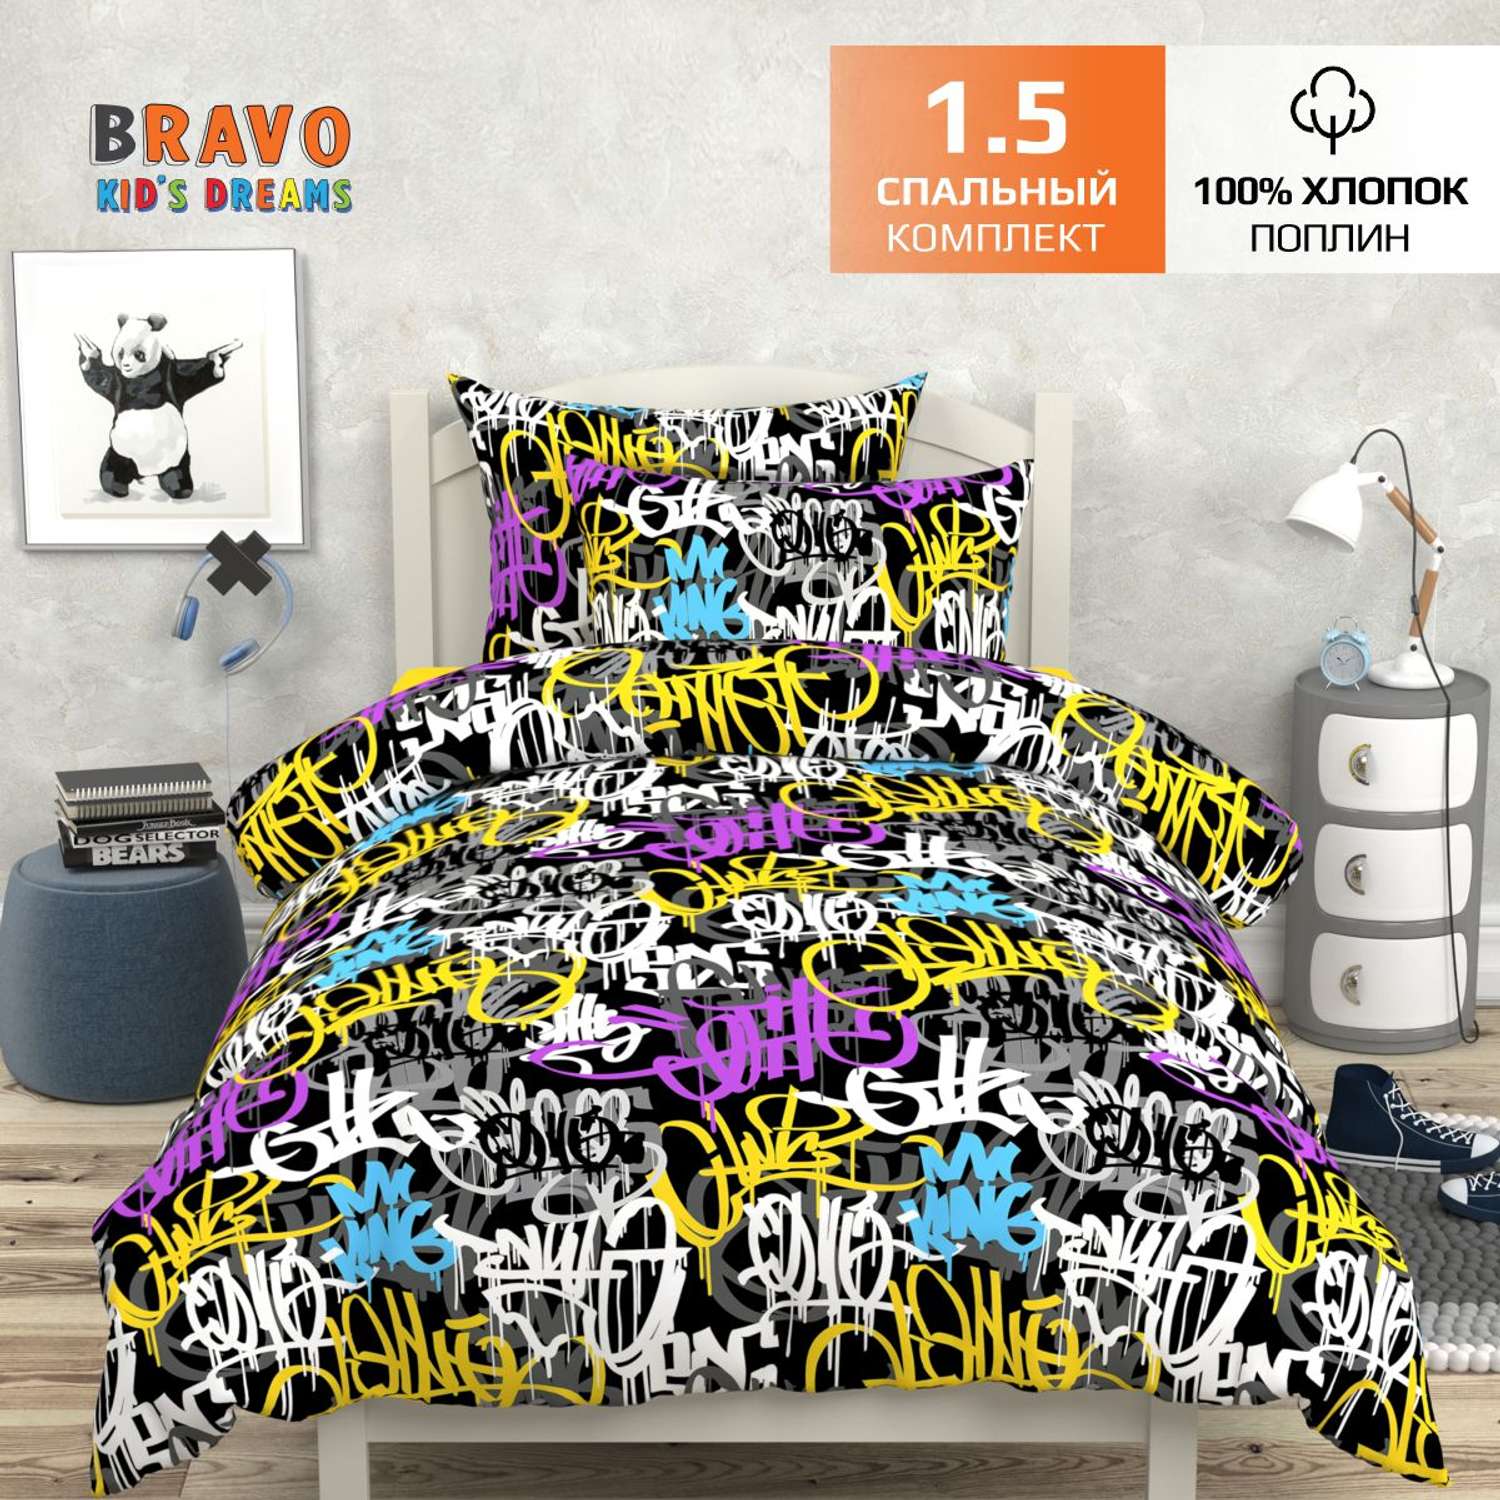 Комплект постельного белья BRAVO kids dreams Граффити 1.5-спальный наволочка 70х70 рис.6052-1+5093-1 - фото 1